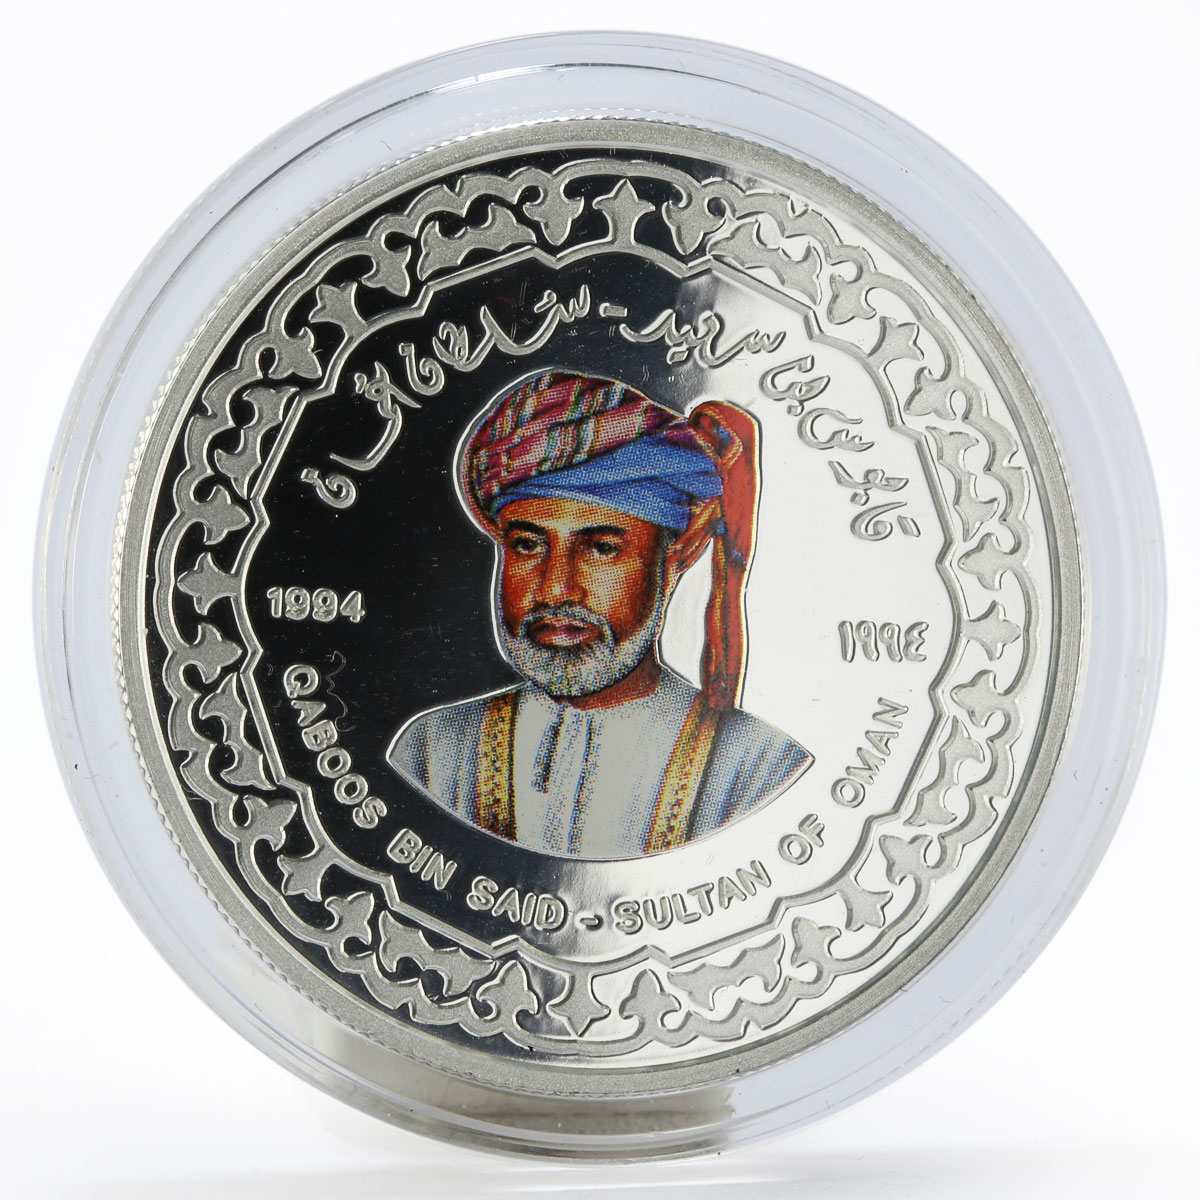 Oman 1/2 riyal 250th Anniversary of Albu-Said Dynasty 1994